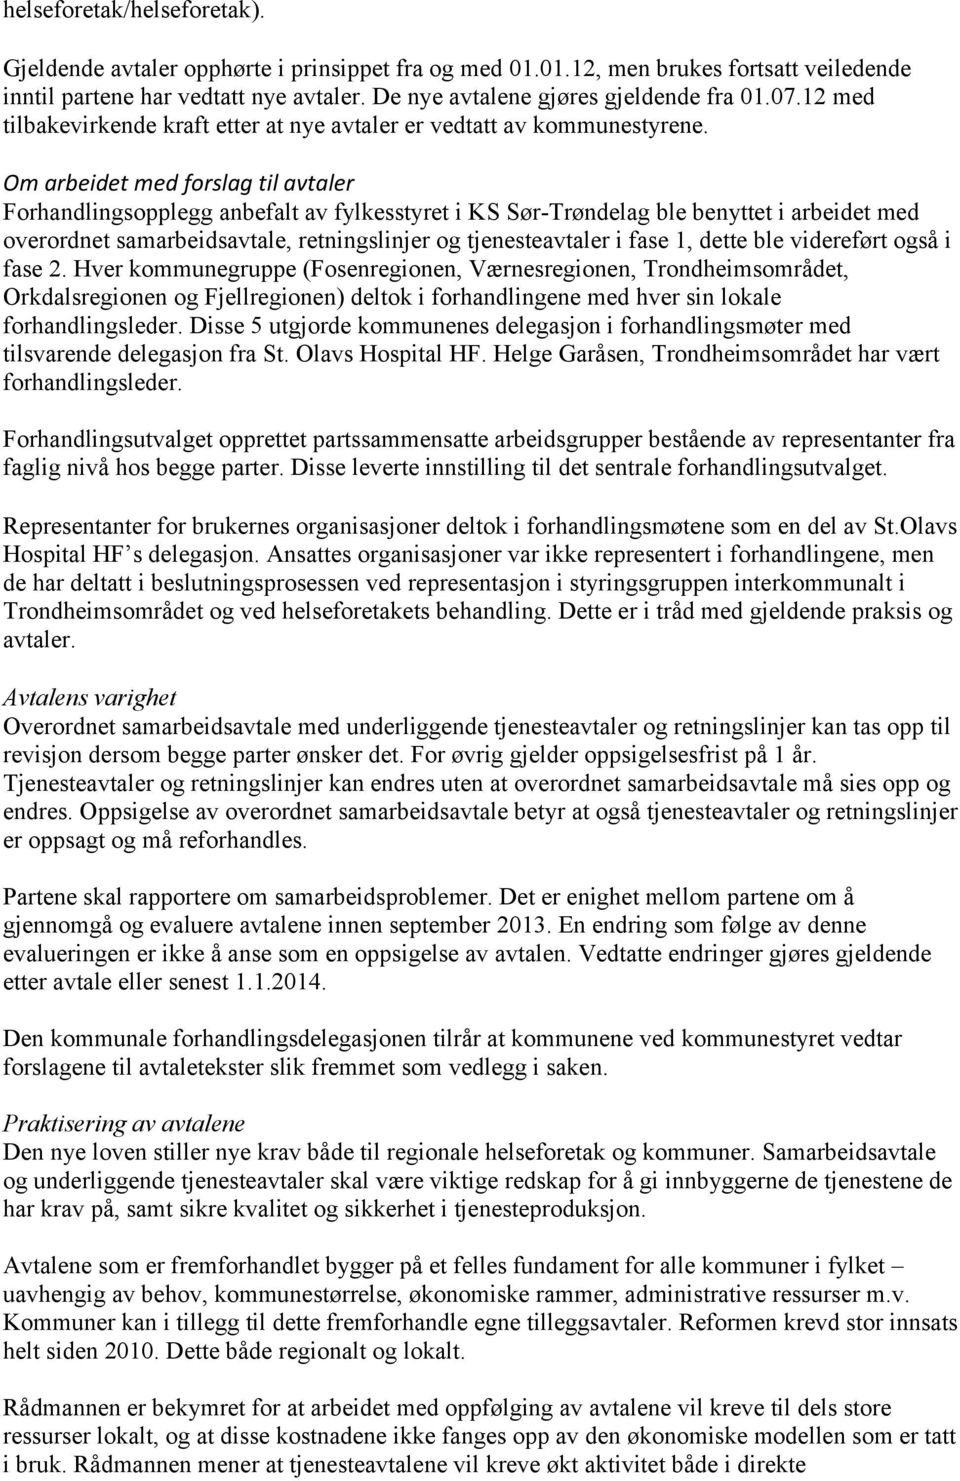 Om arbeidet med forslag til avtaler Forhandlingsopplegg anbefalt av fylkesstyret i KS Sør-Trøndelag ble benyttet i arbeidet med overordnet samarbeidsavtale, retningslinjer og tjenesteavtaler i fase